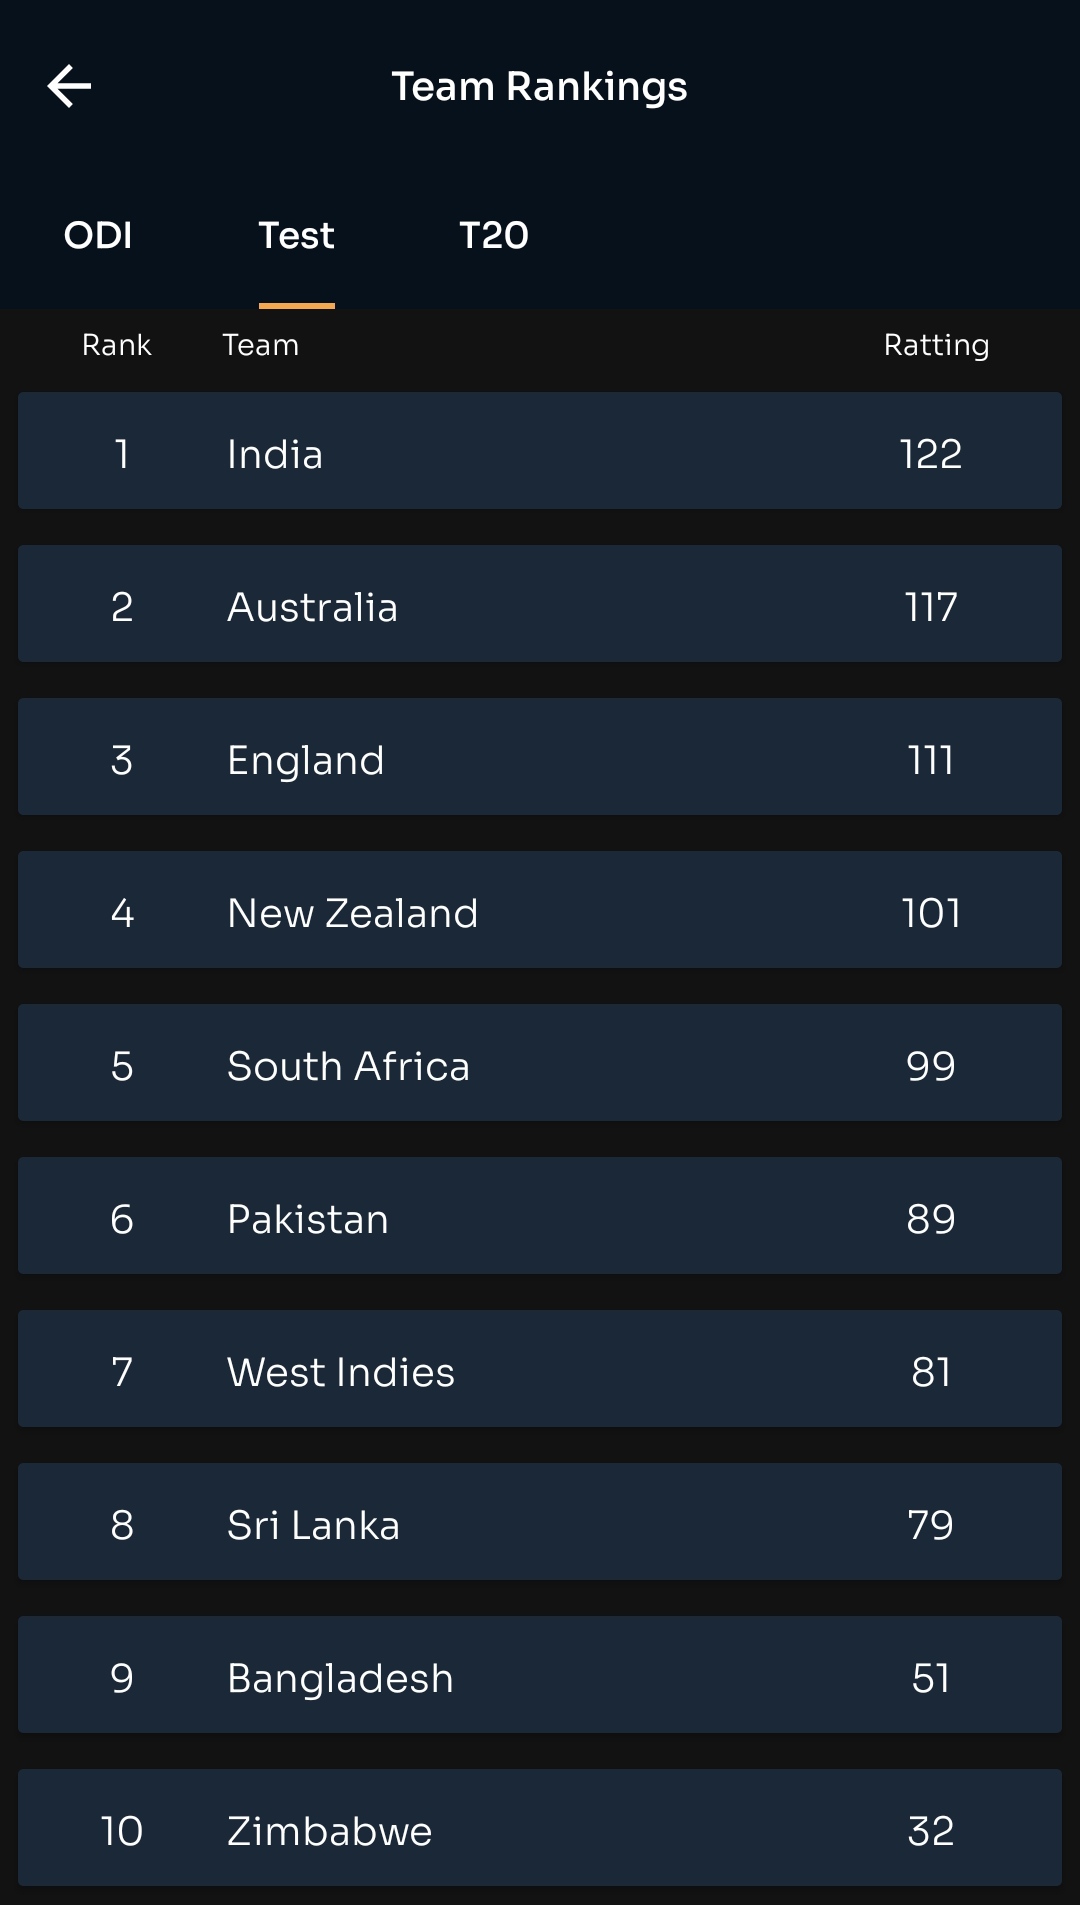 भारत दुनिया की नंबर 1 रैंक वाली टेस्ट टीम बन गई है इसे पहले भारत टी 20 और वनडे रैंकिंग में टॉप पर है ।